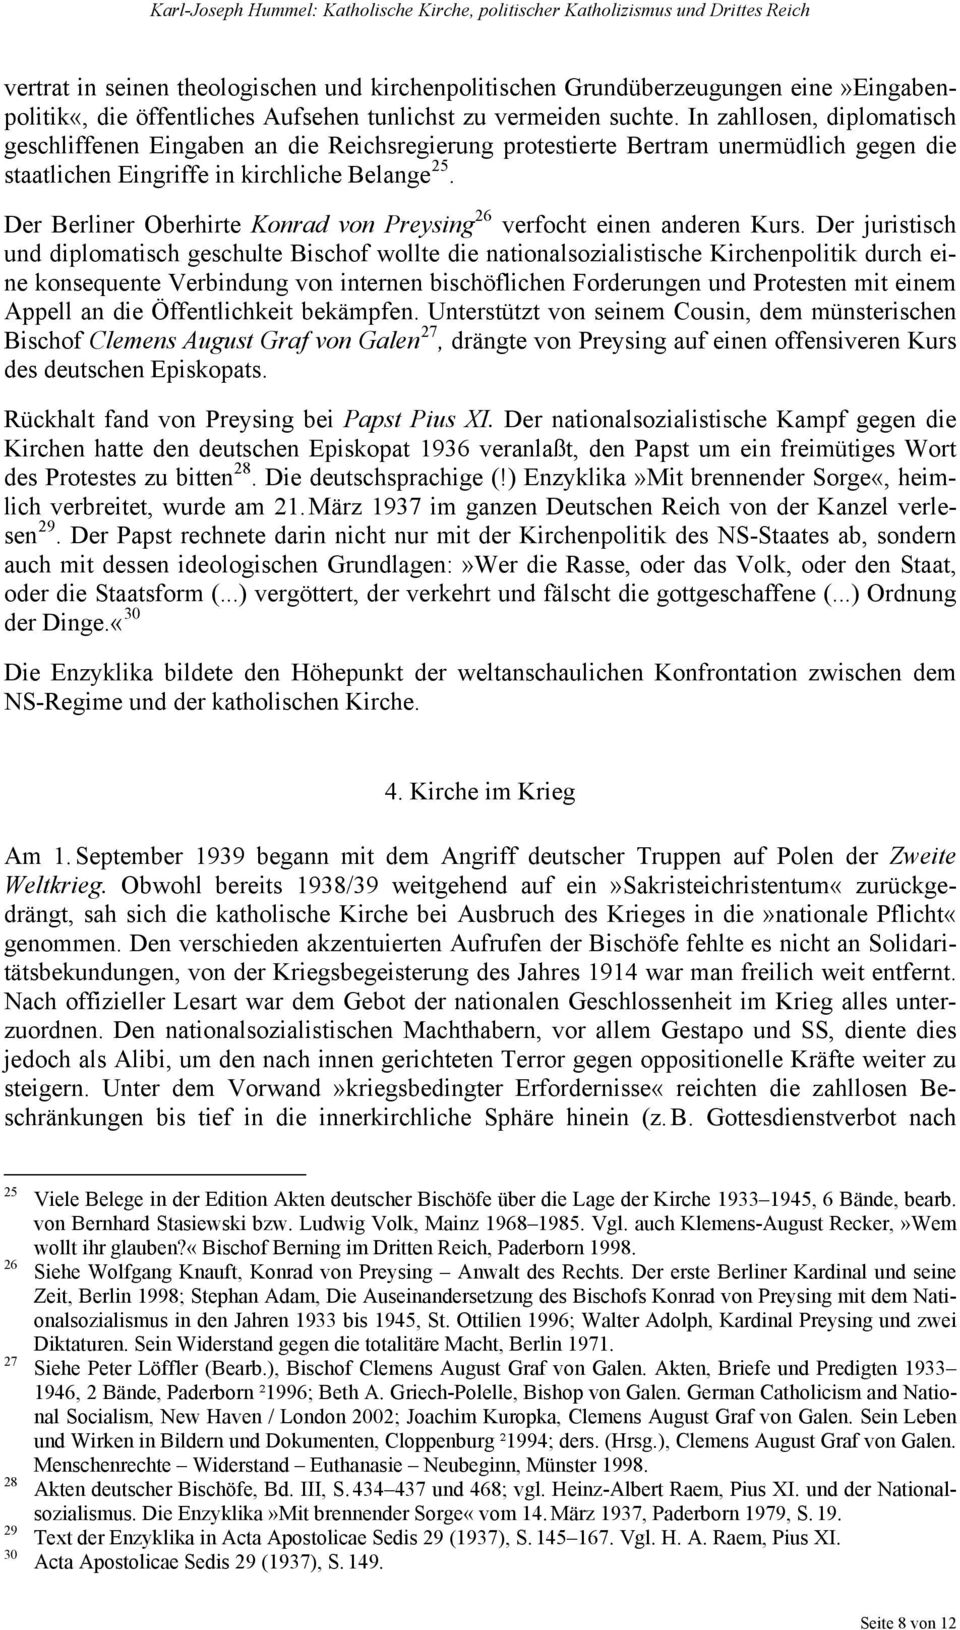 Der Berliner Oberhirte Konrad von Preysing 26 verfocht einen anderen Kurs.